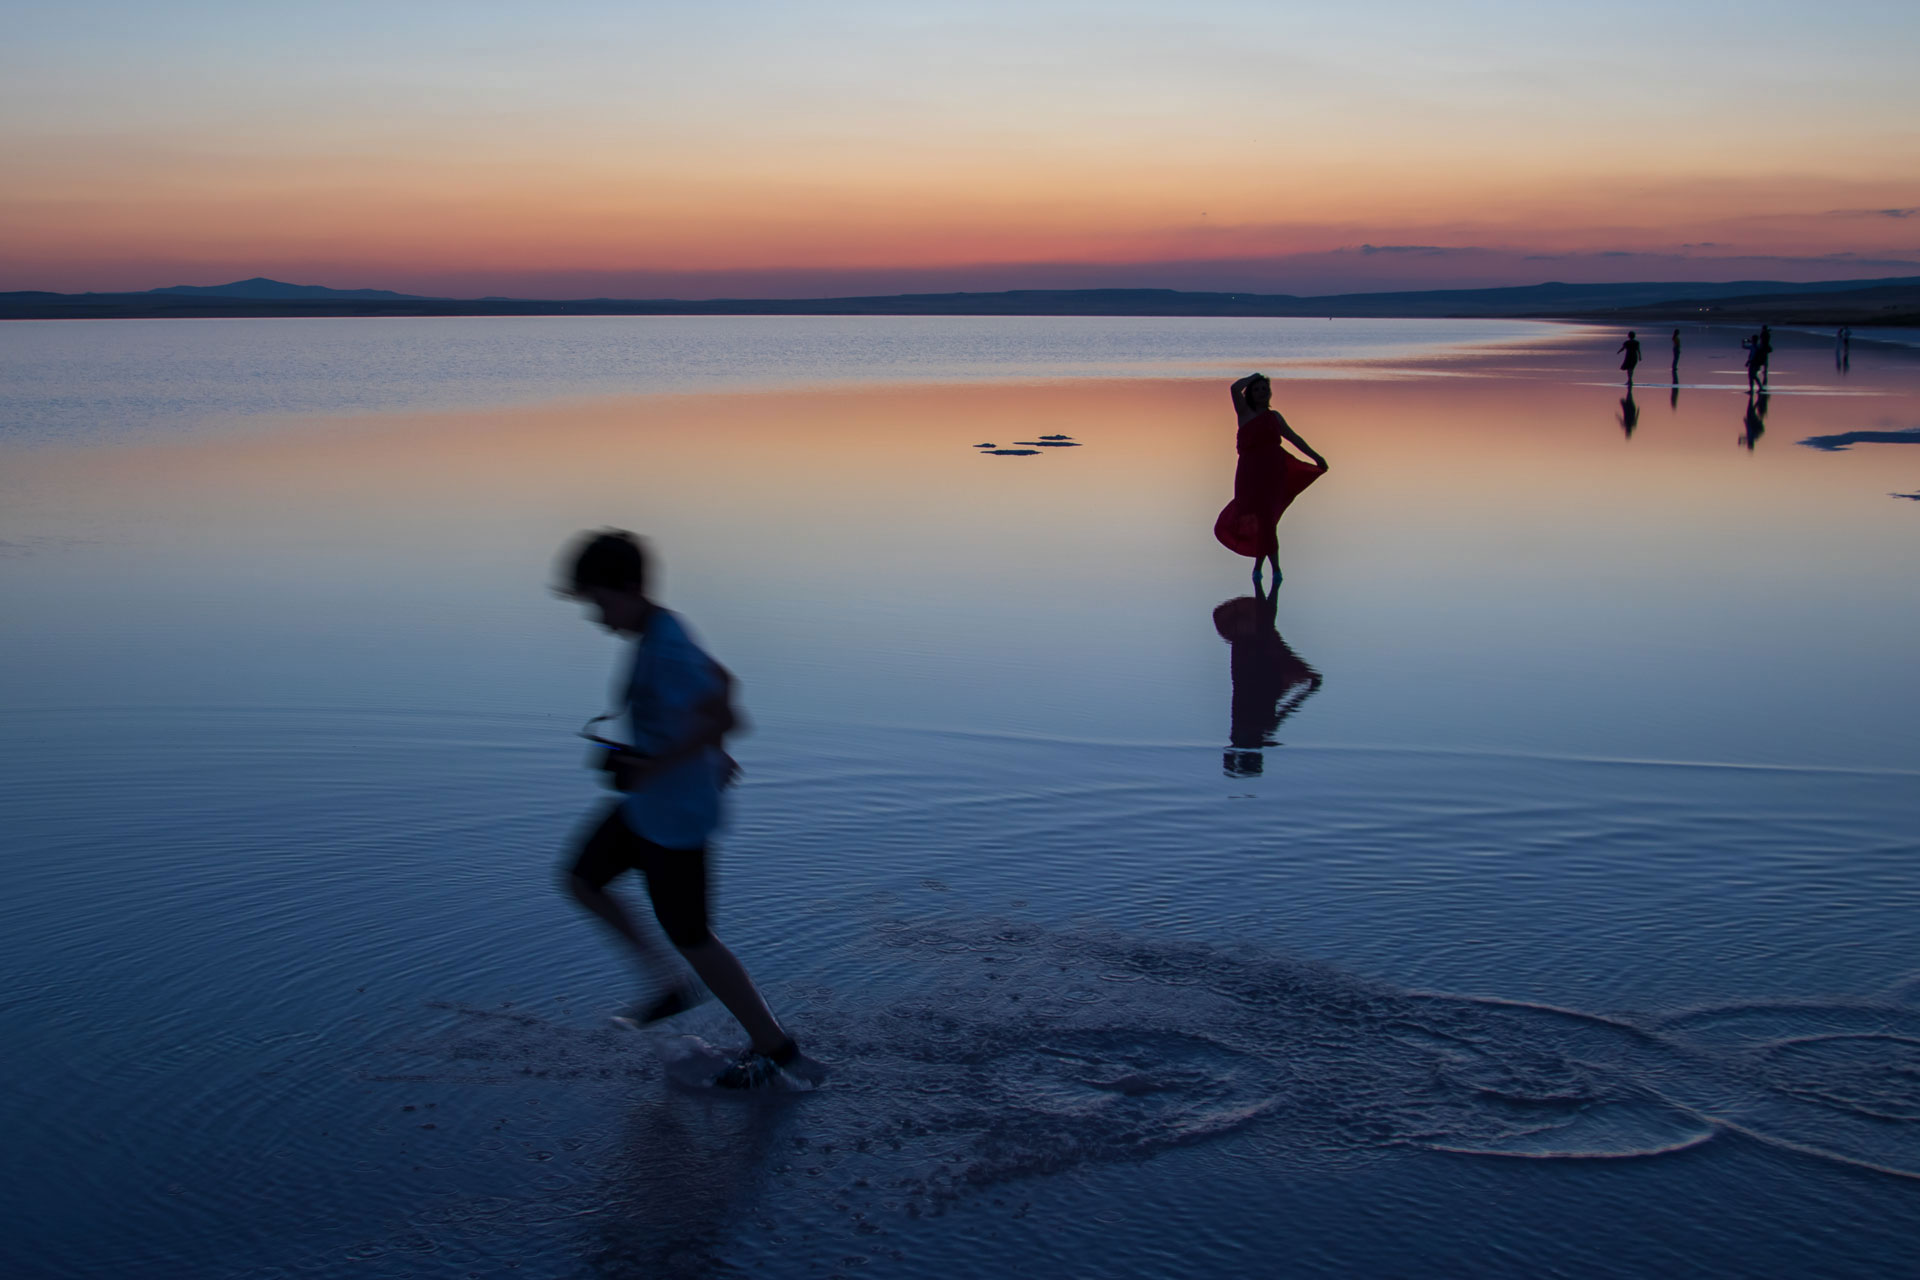 Tuz Gölü Fotoğrafları Tuz gölü resimleri Sunset Gün batımı fotoğrafları Çekergezer Hakan Aydın Fotoğrafları Tuz Gölü görselleri